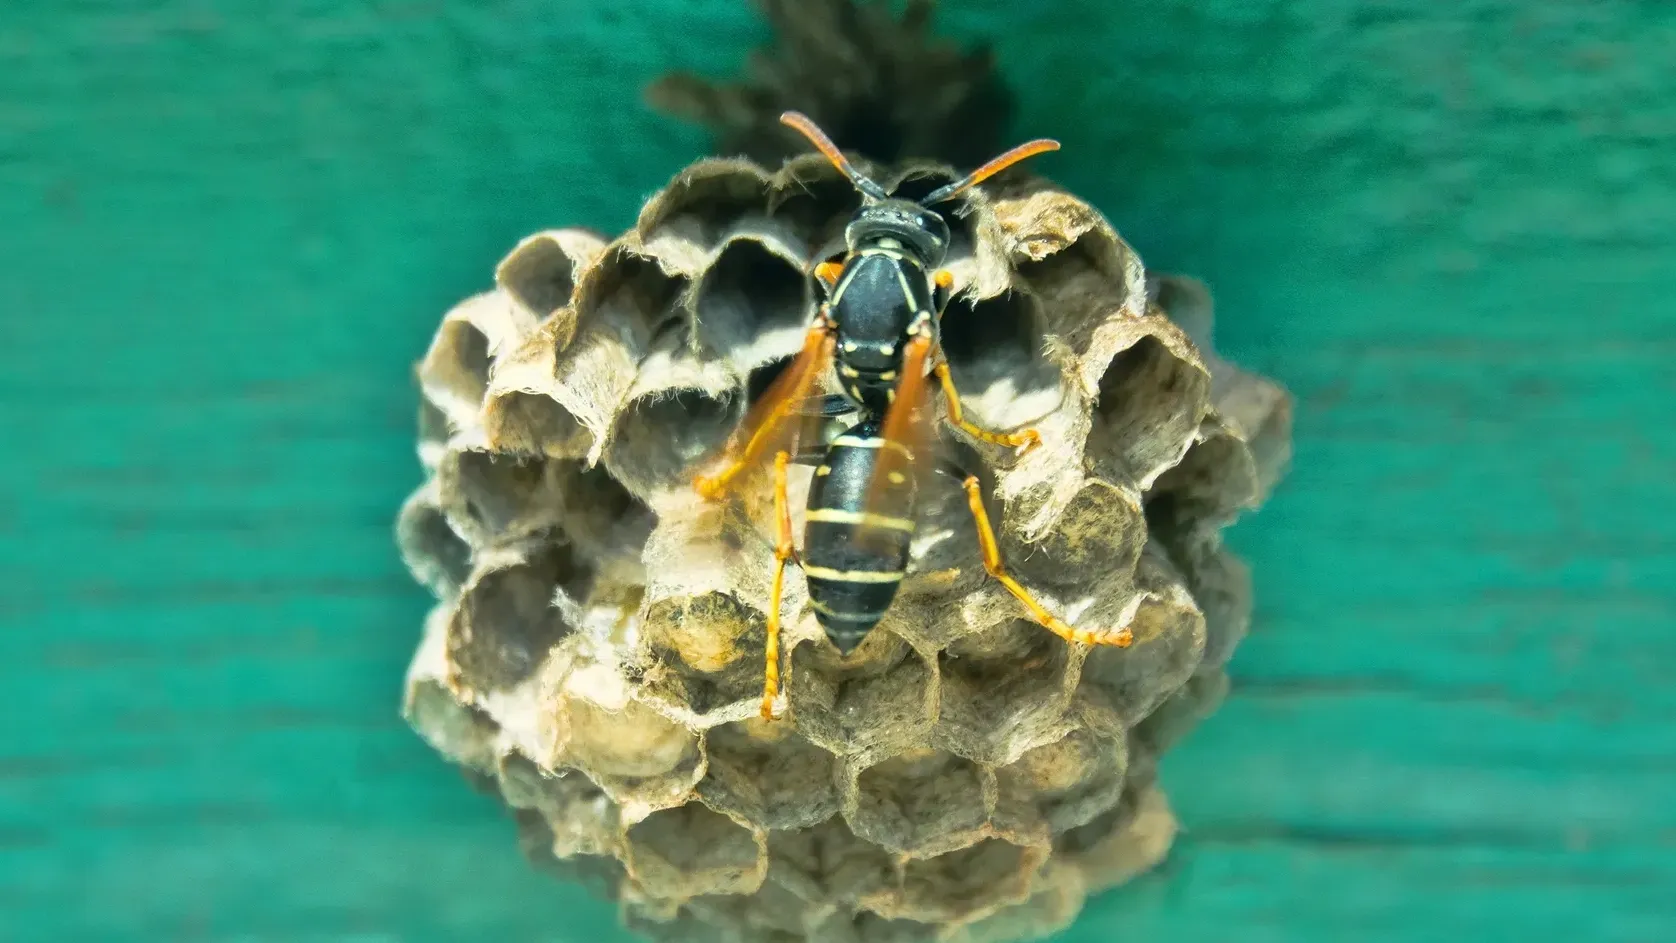 Южноамериканские осы достигают 1,7 см в длину. Фото: Maximillian cabinet / Shutterstock / Fotodom